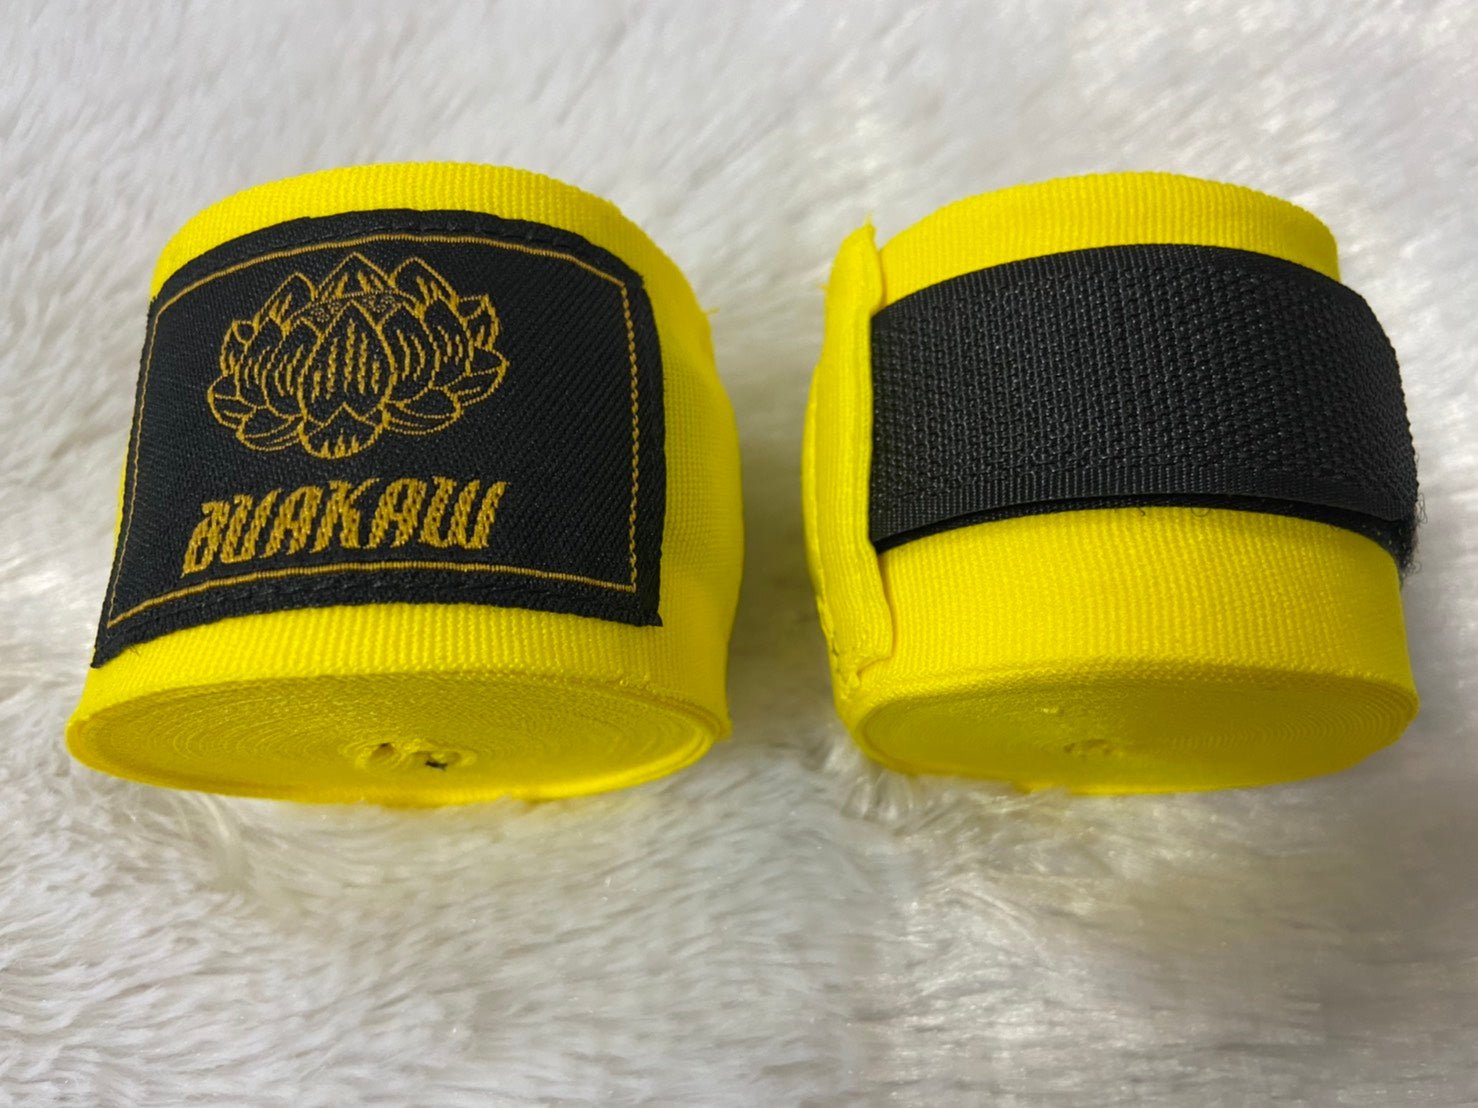 Buakaw Handwraps Yellow Buakaw